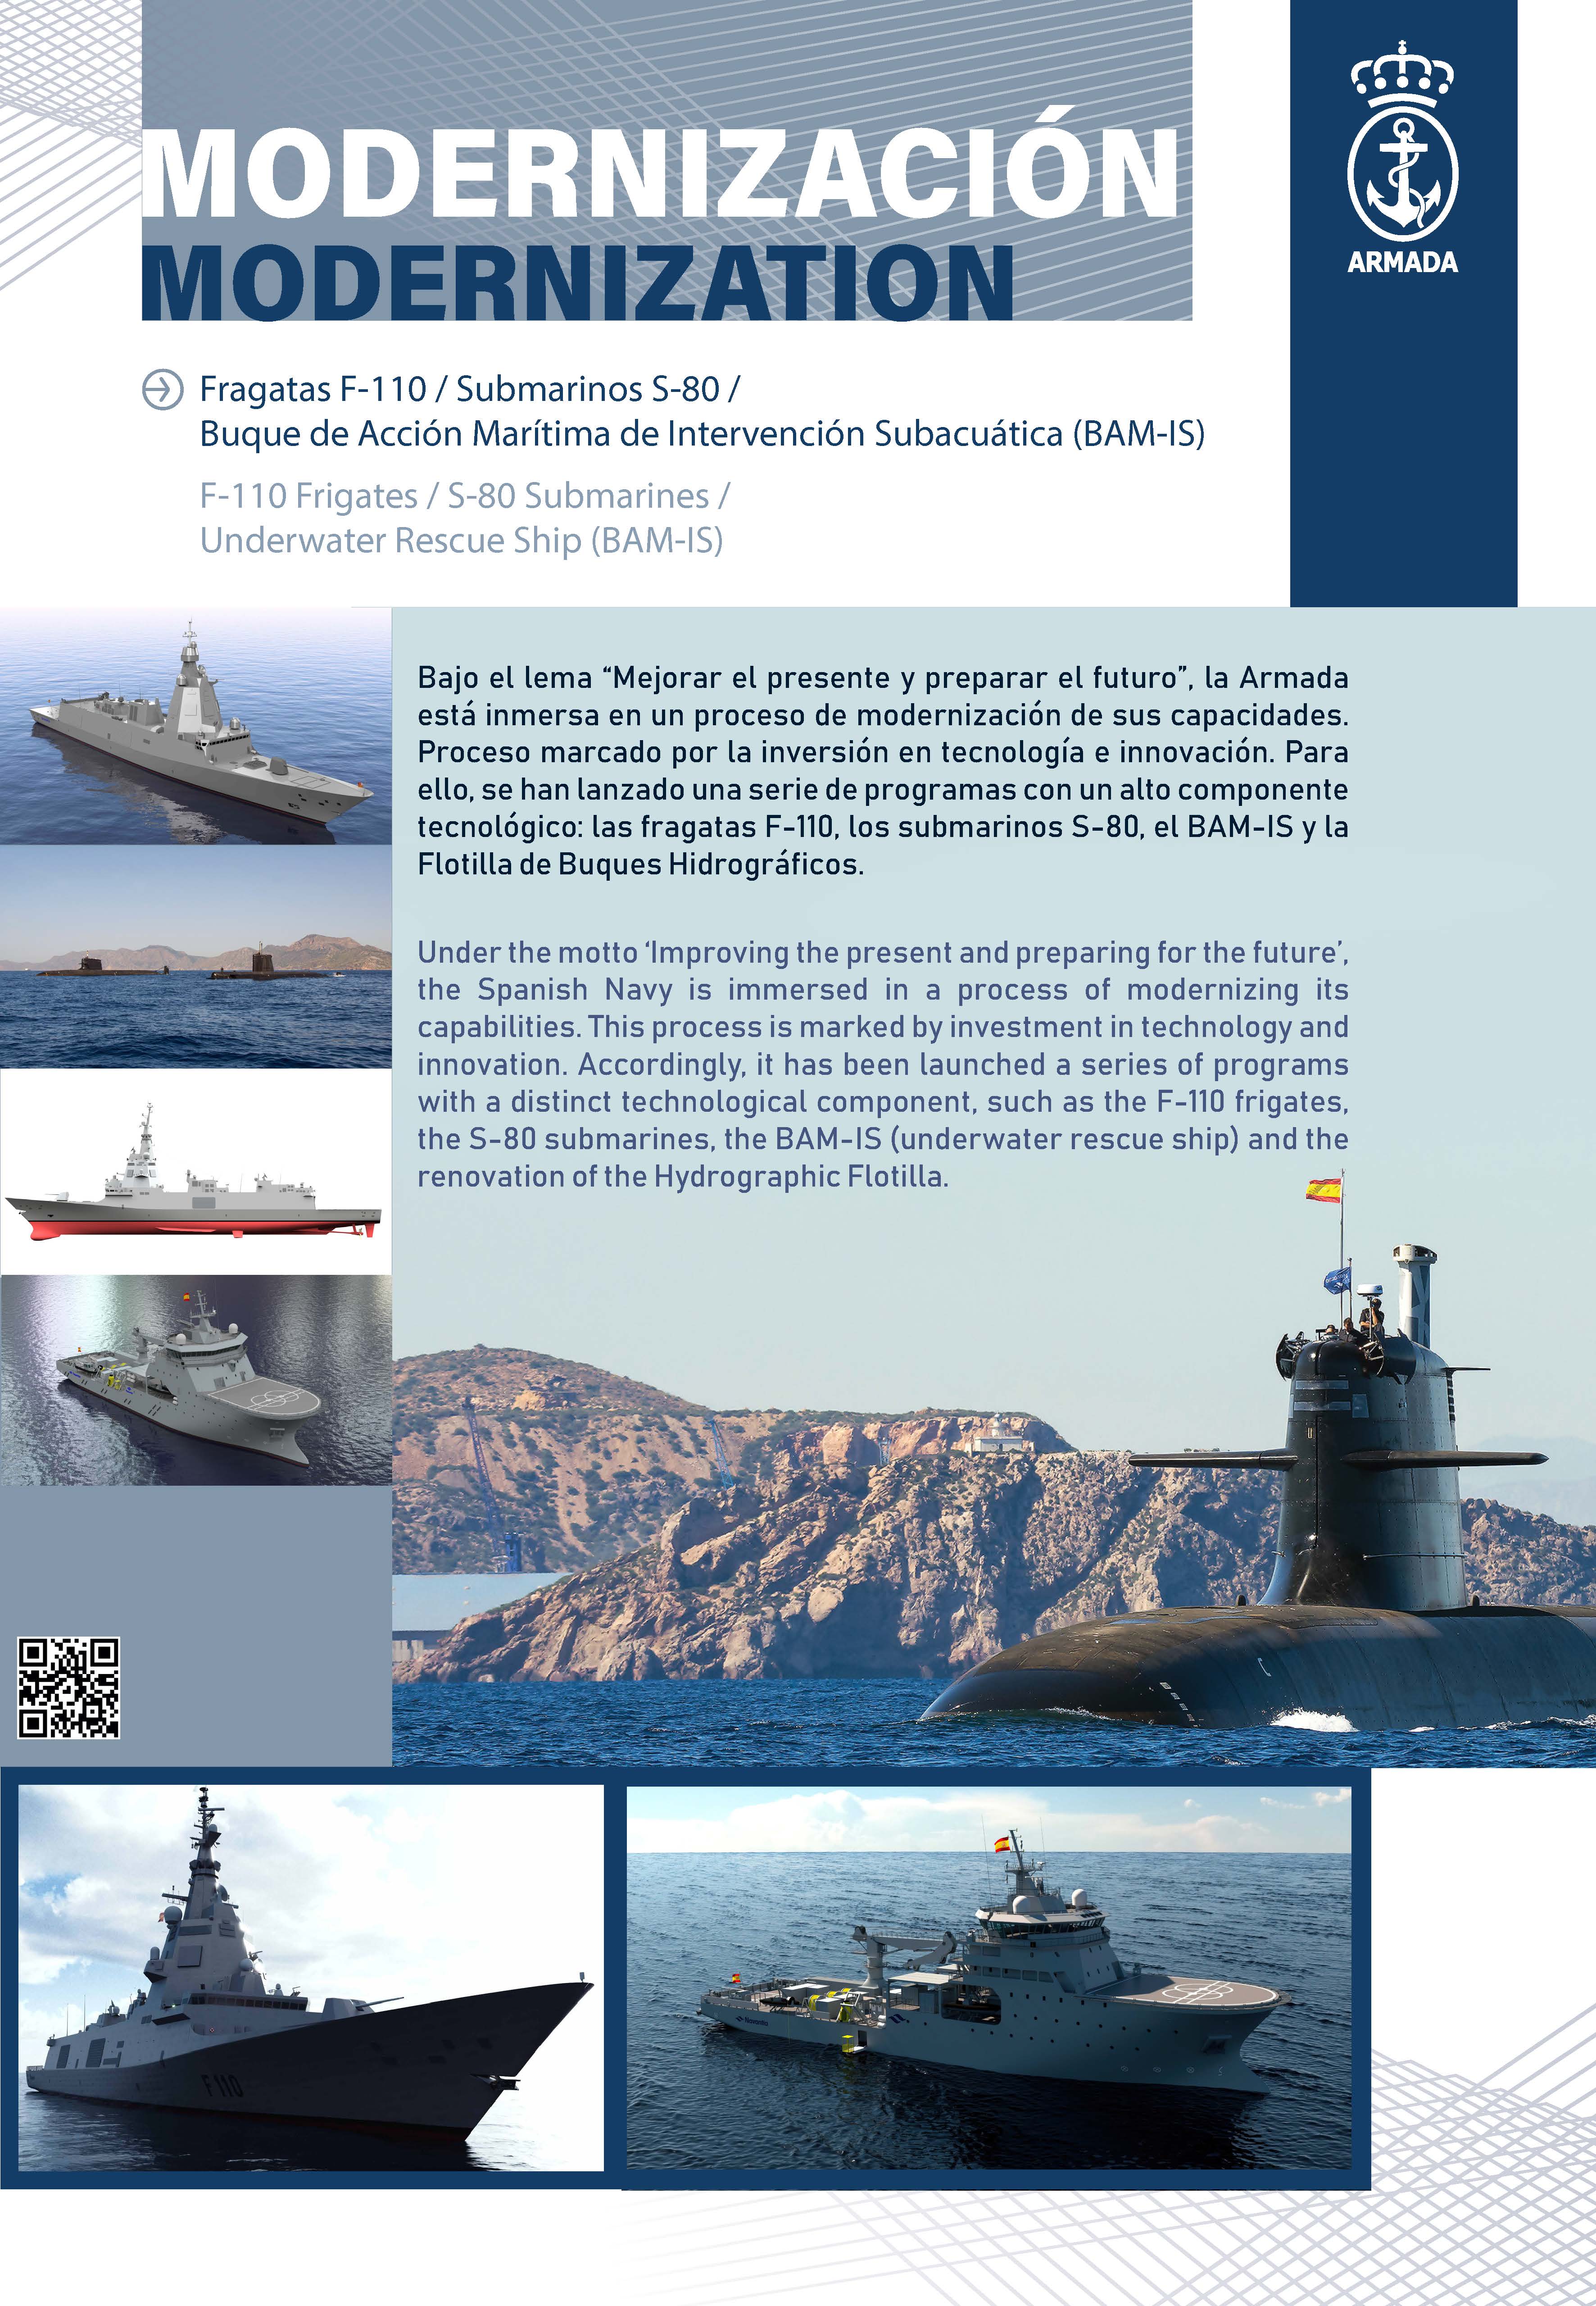 Fragatas F-110 / Submarinos S-80 / Buque de Acción Marítima de Intervención Subacuática (BAM-IS)